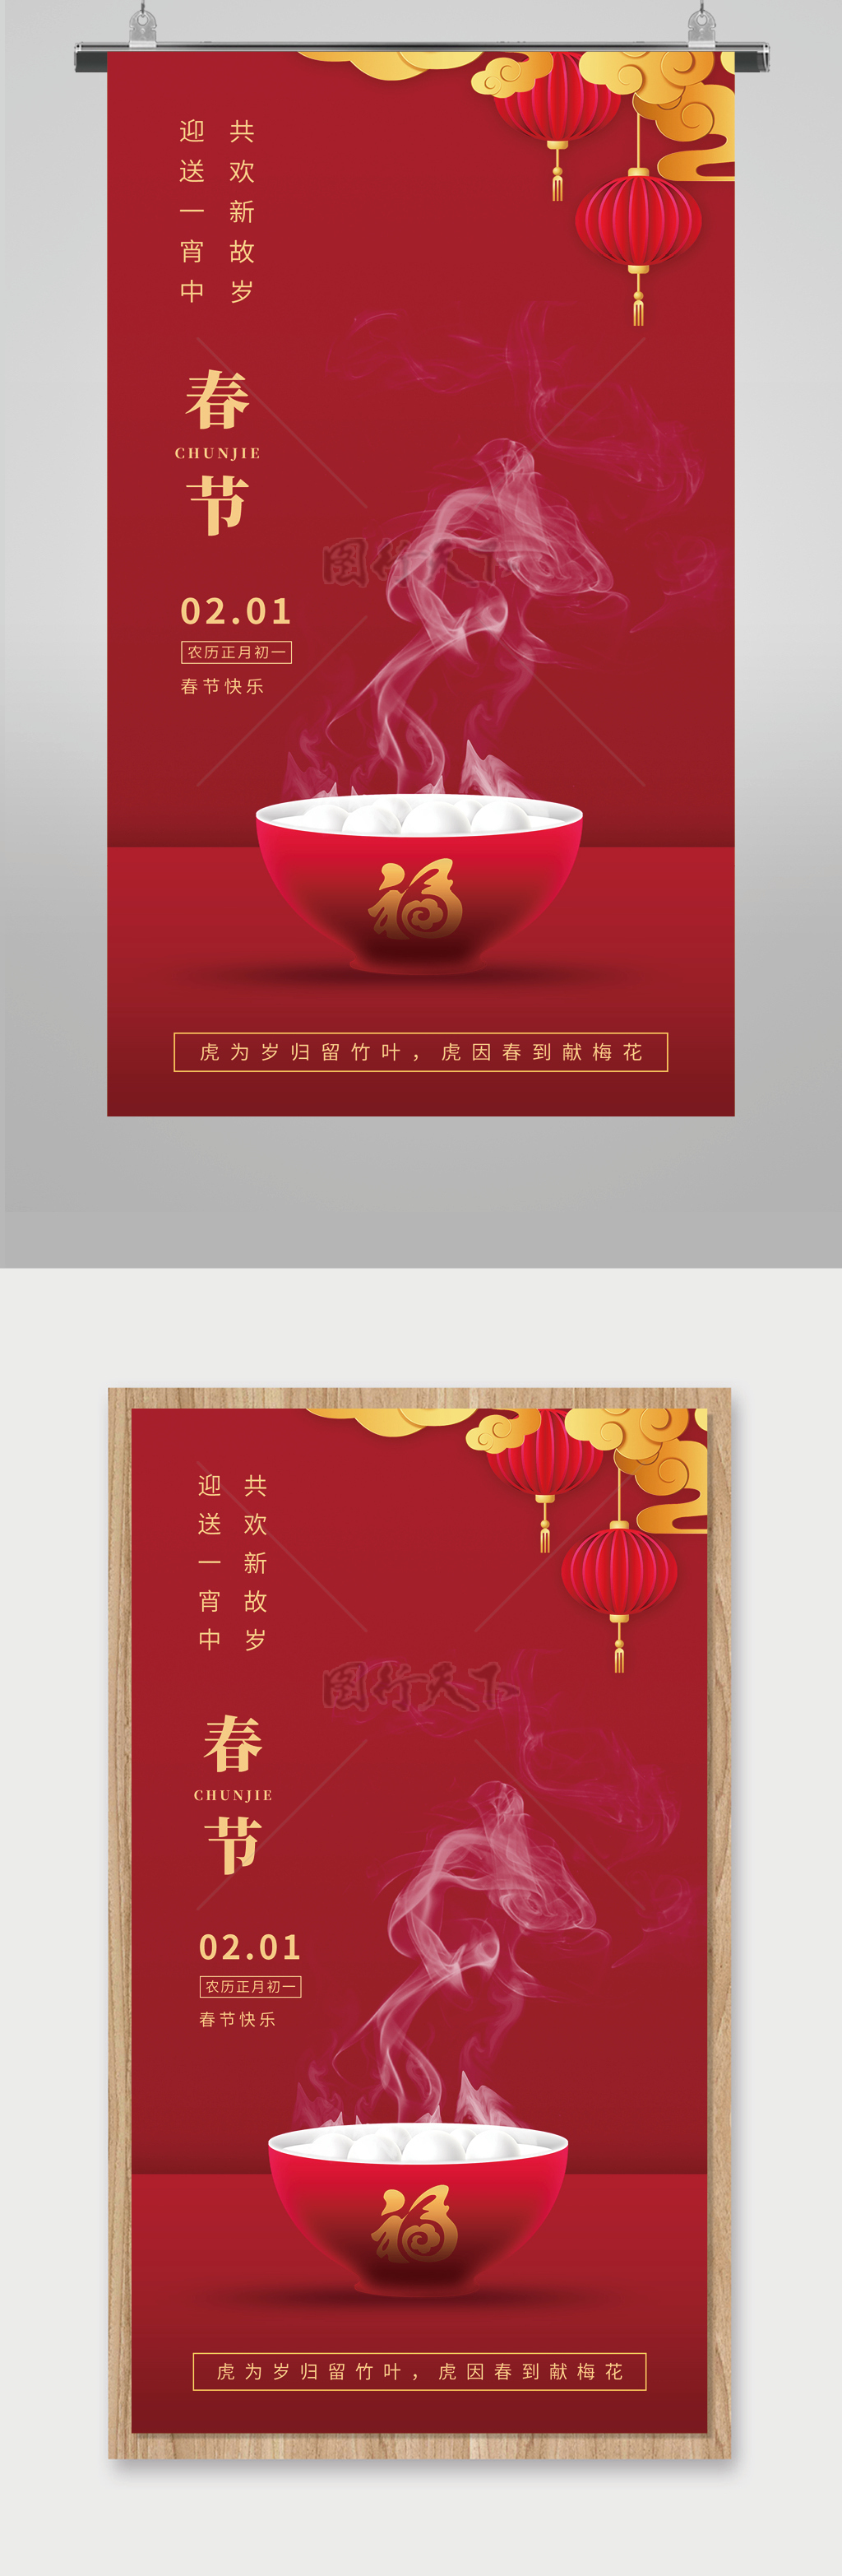 虎年春节海报设计